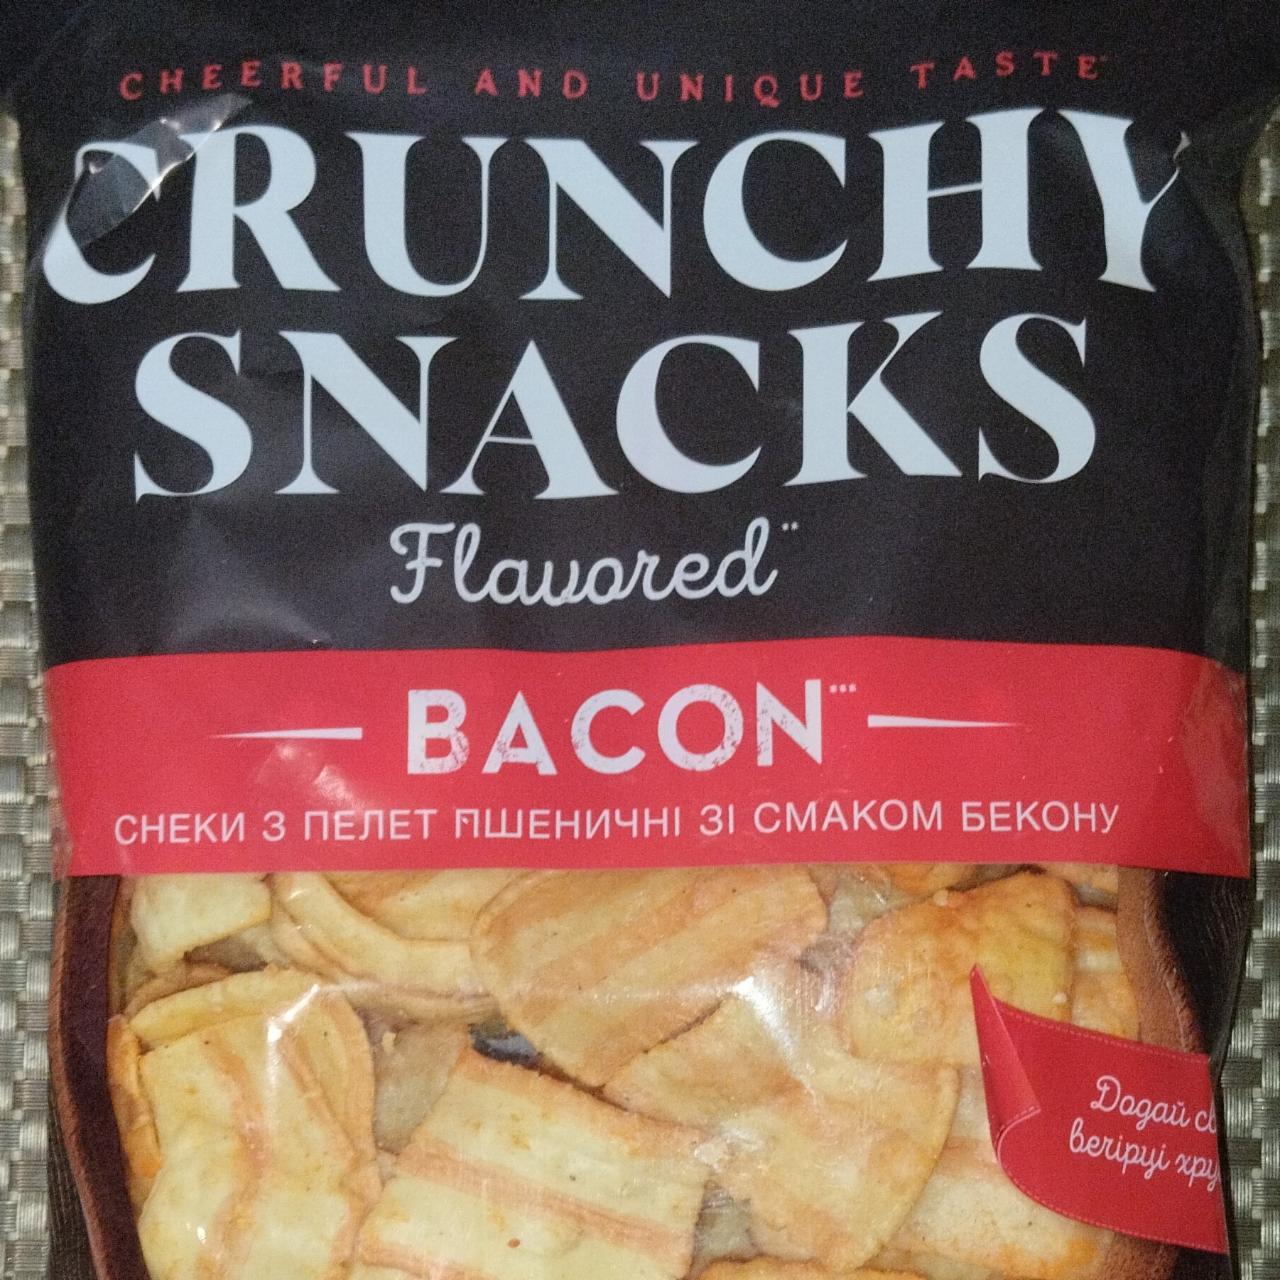 Фото - Снеки з пелет пшеничні зі смаком бекону Crunchy Snacks Bacon Своя Лінія